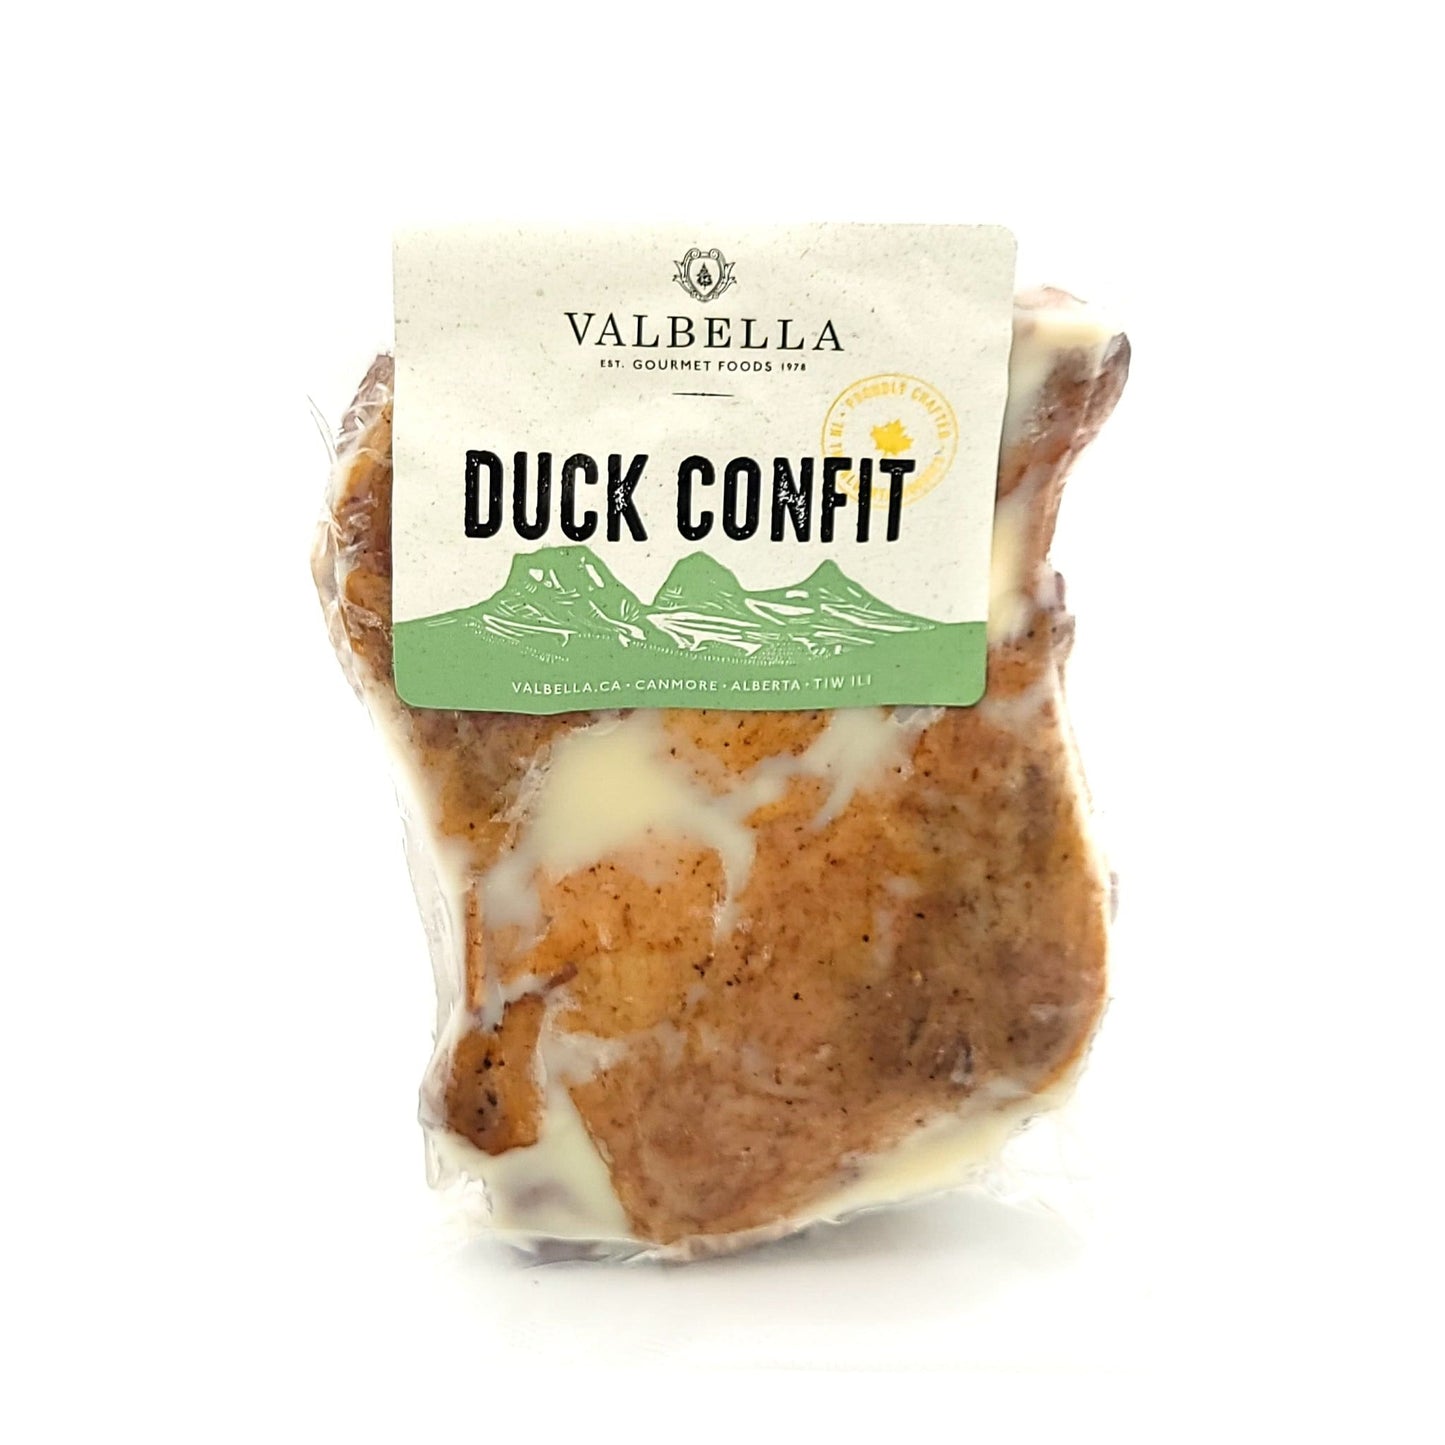 Duck Confit - Valbella Gourmet Foods